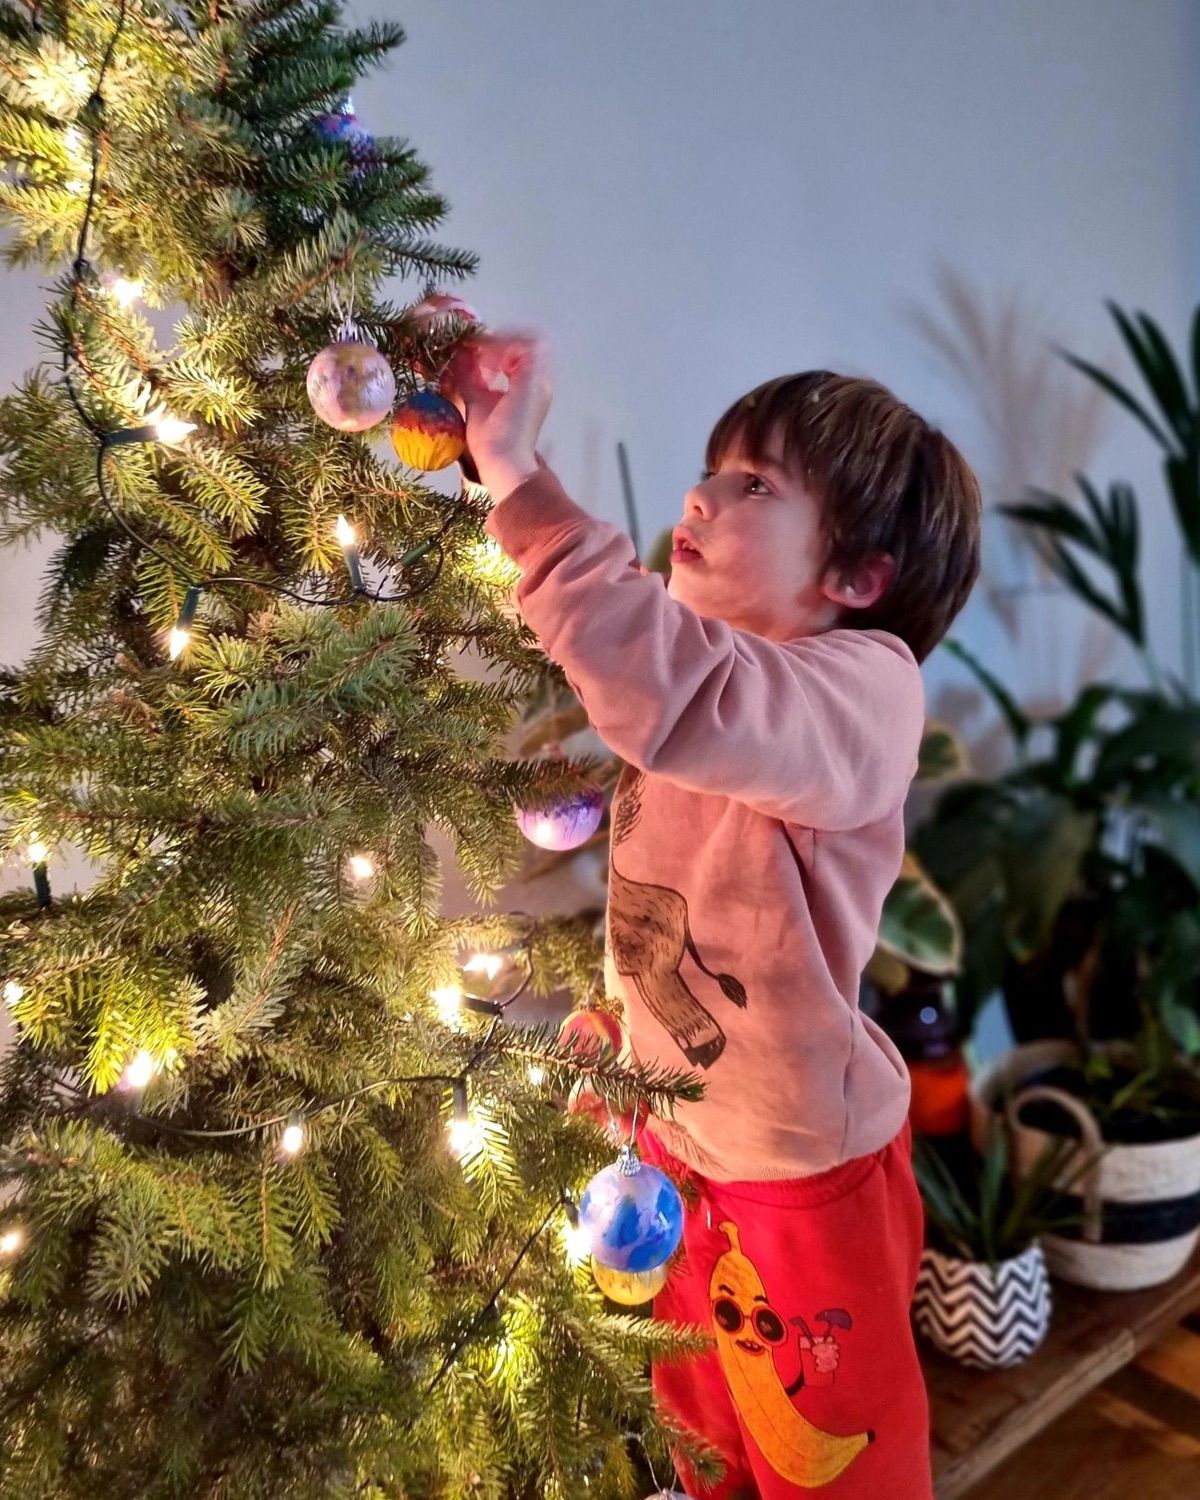 Een groene kerst met een duurzame adoptieboom van beterboompje.nl.